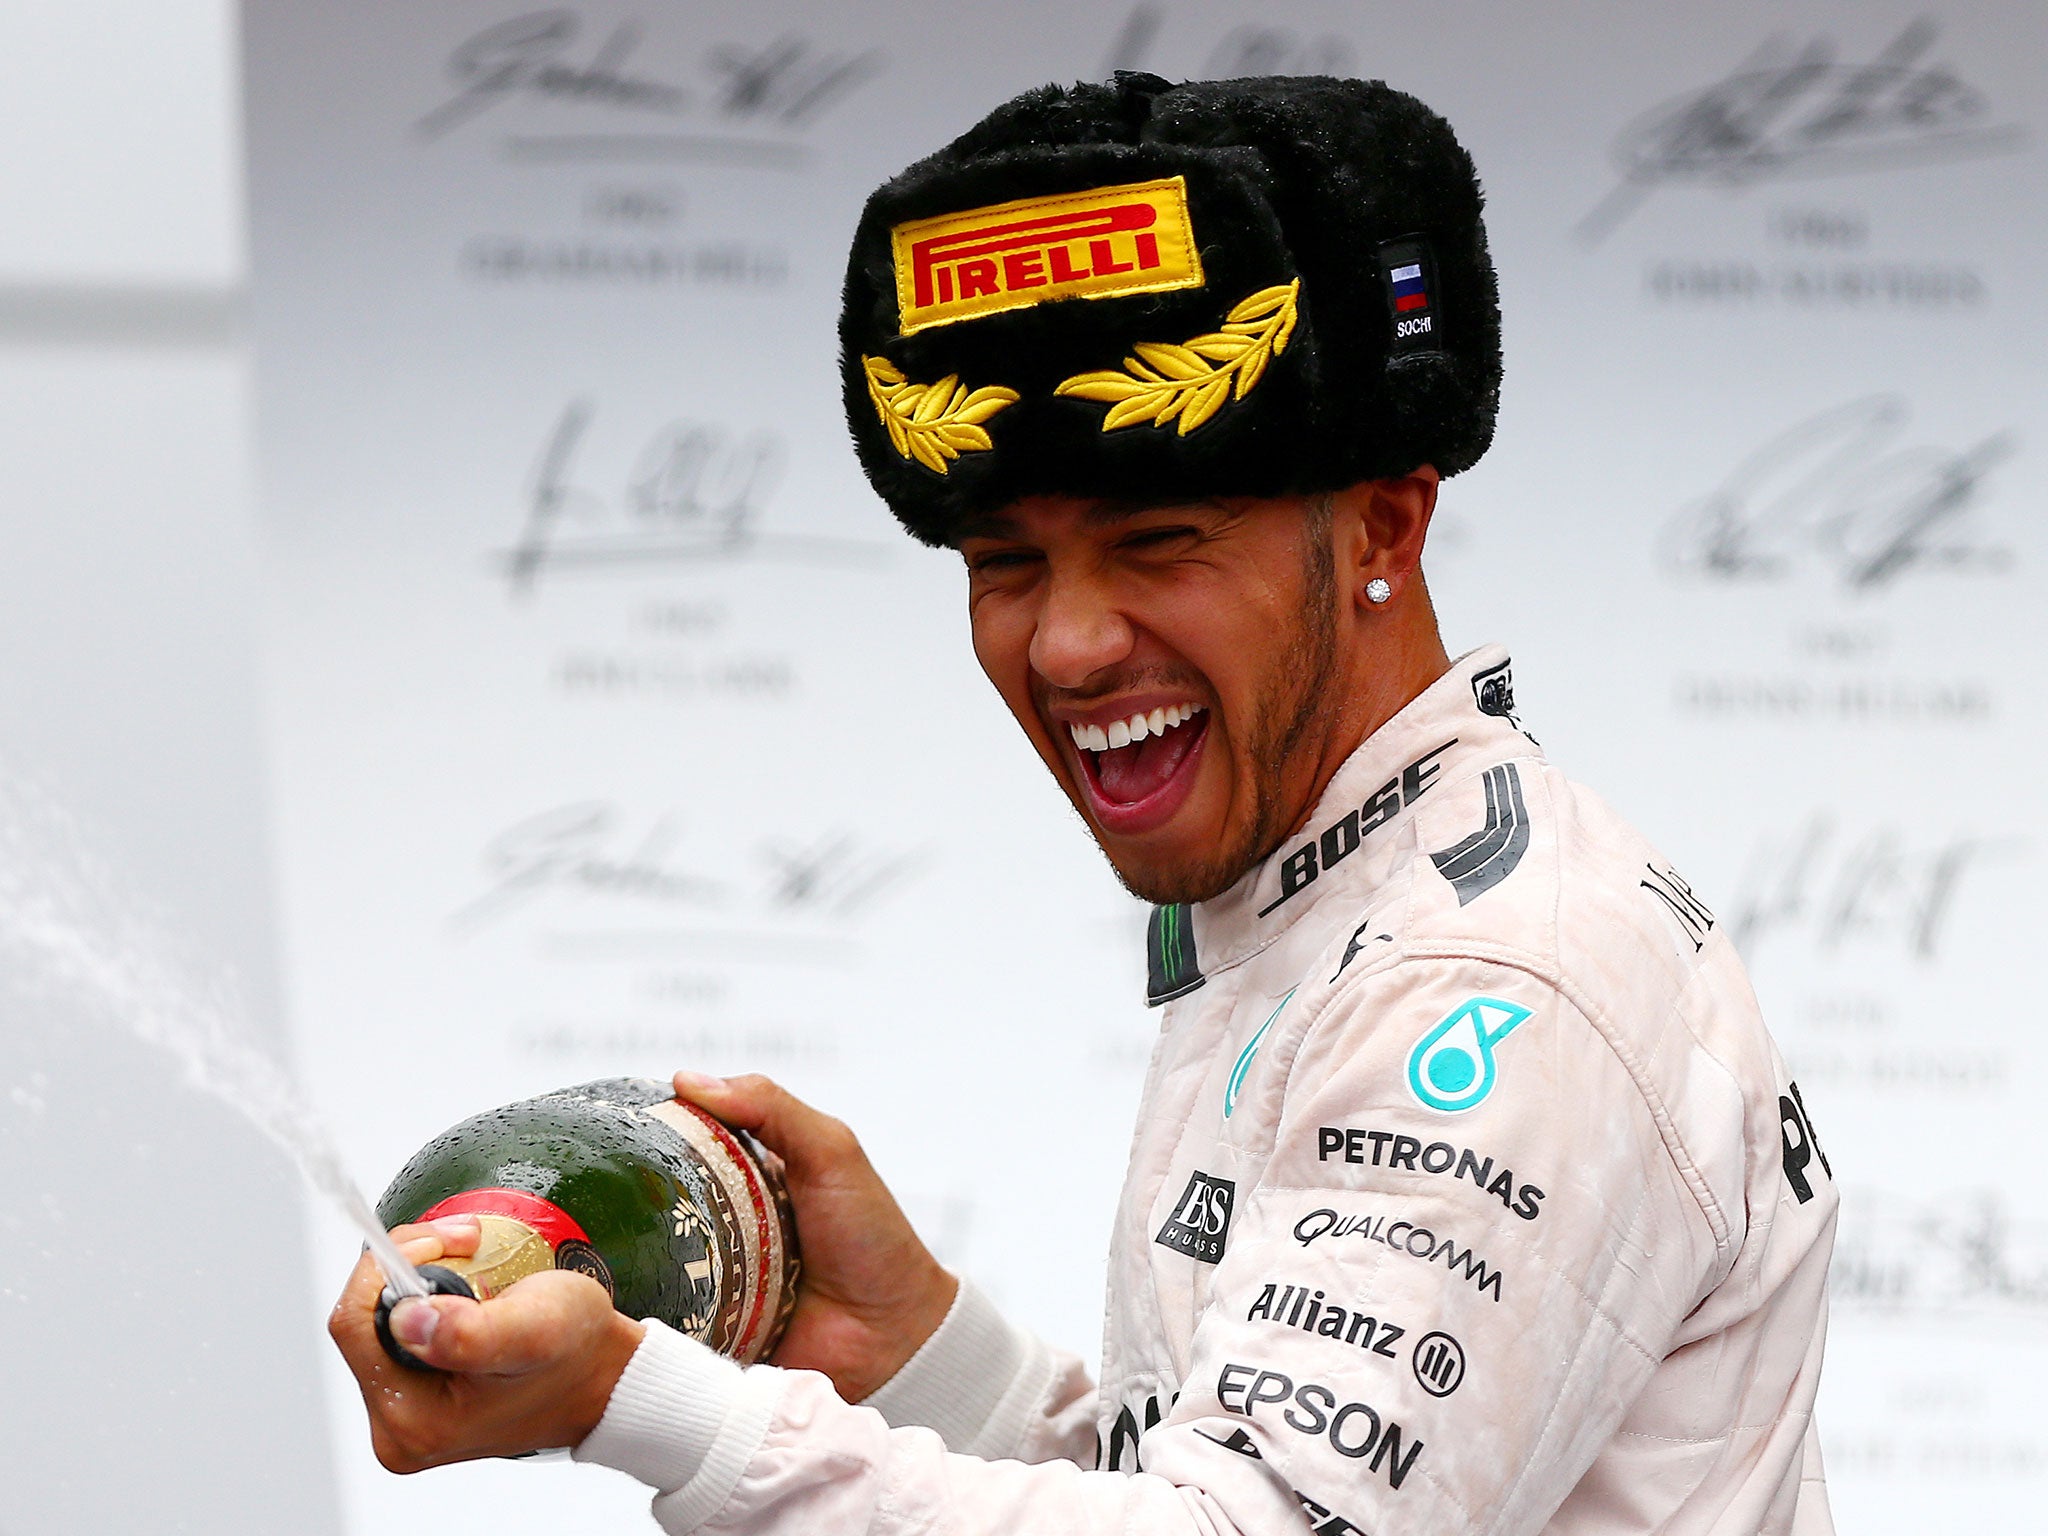 Lewis Hamilton celebrates victory in the Russian Grand Prix